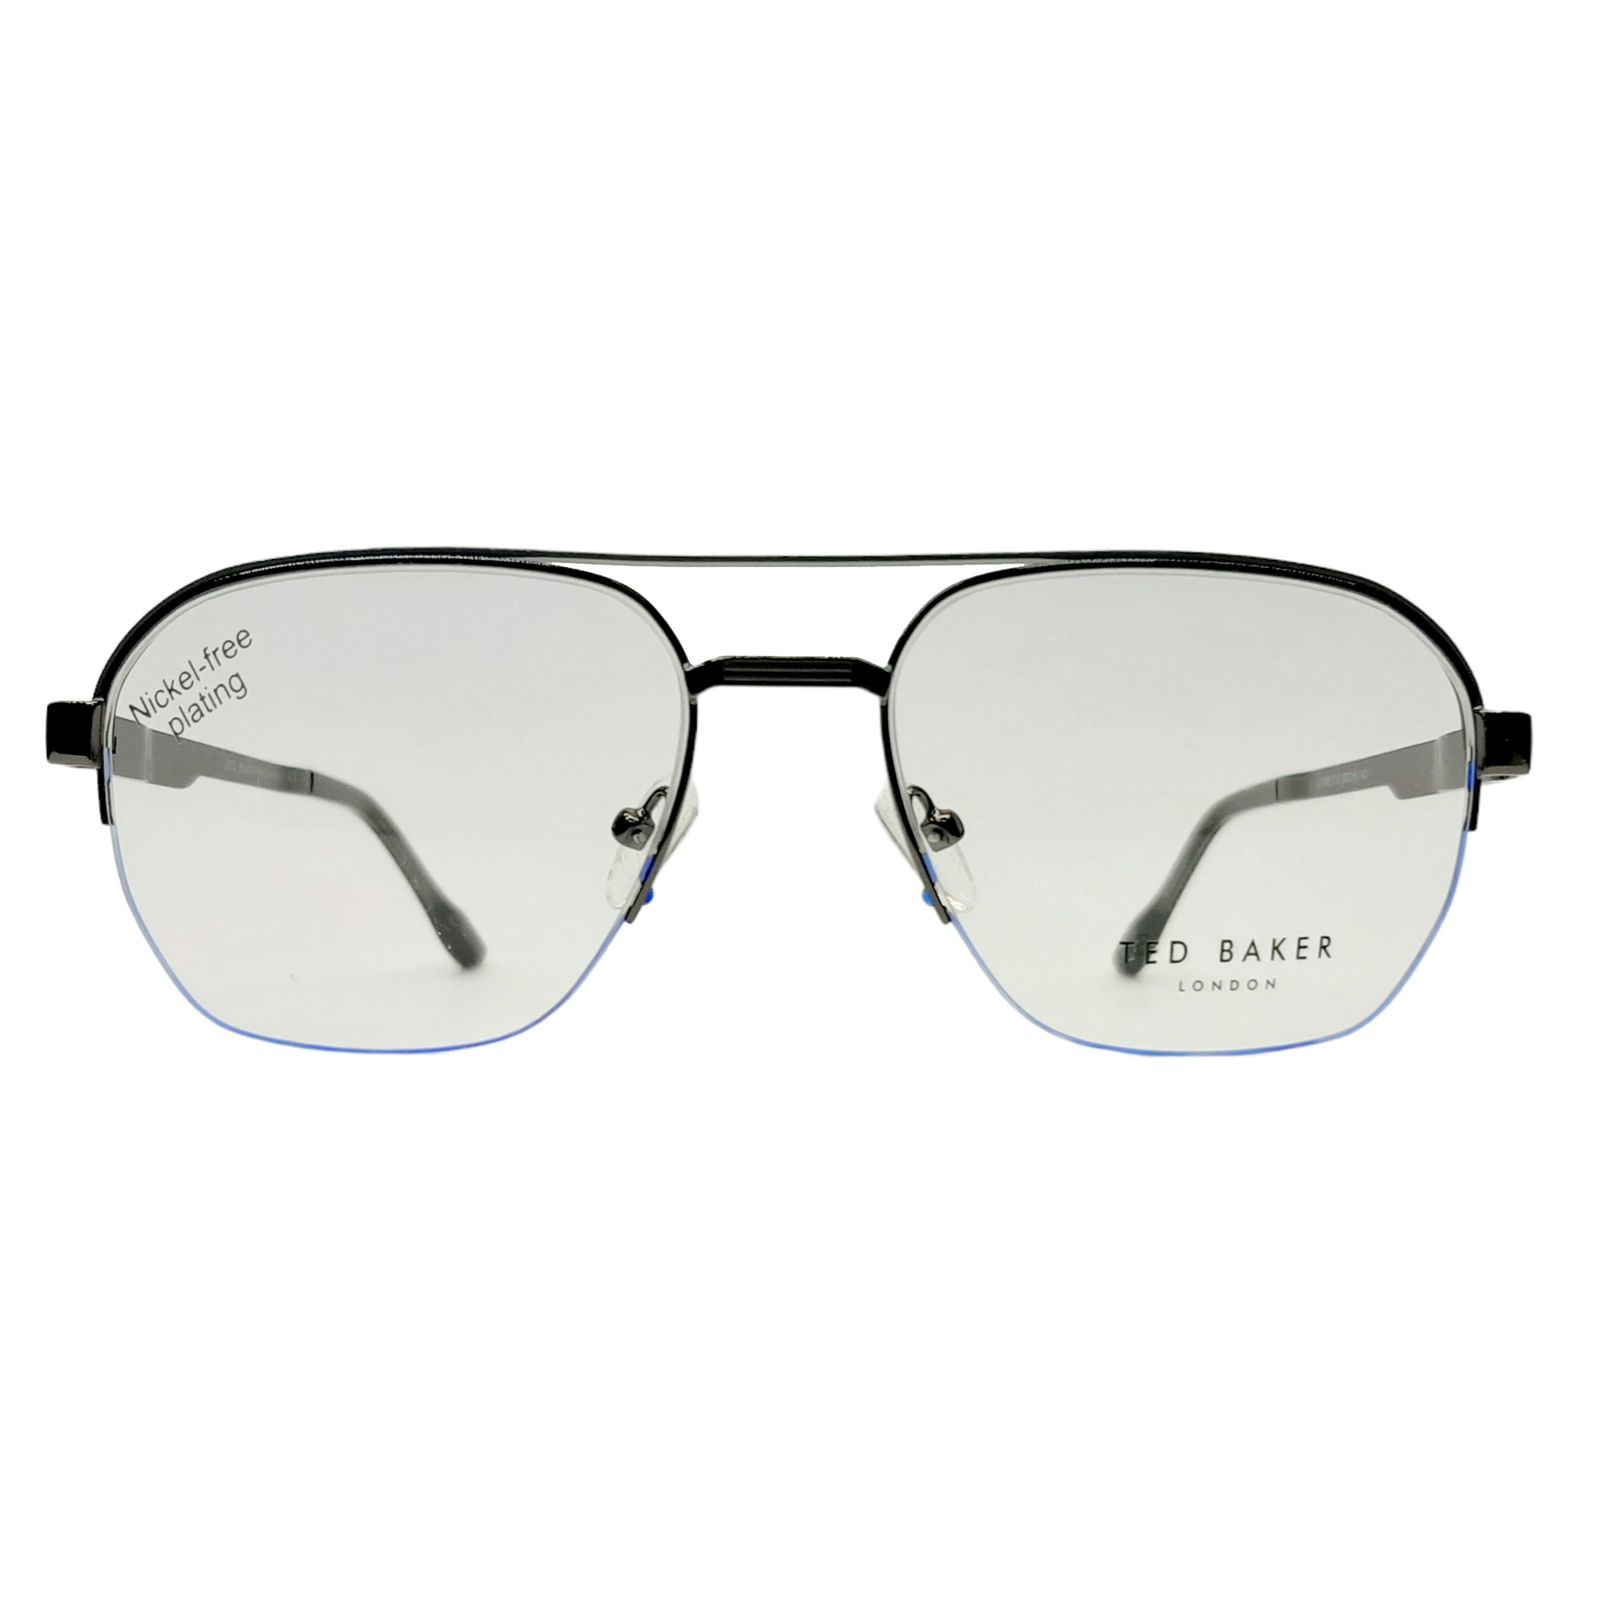 فریم عینک طبی تد بیکر مدل L11060c12